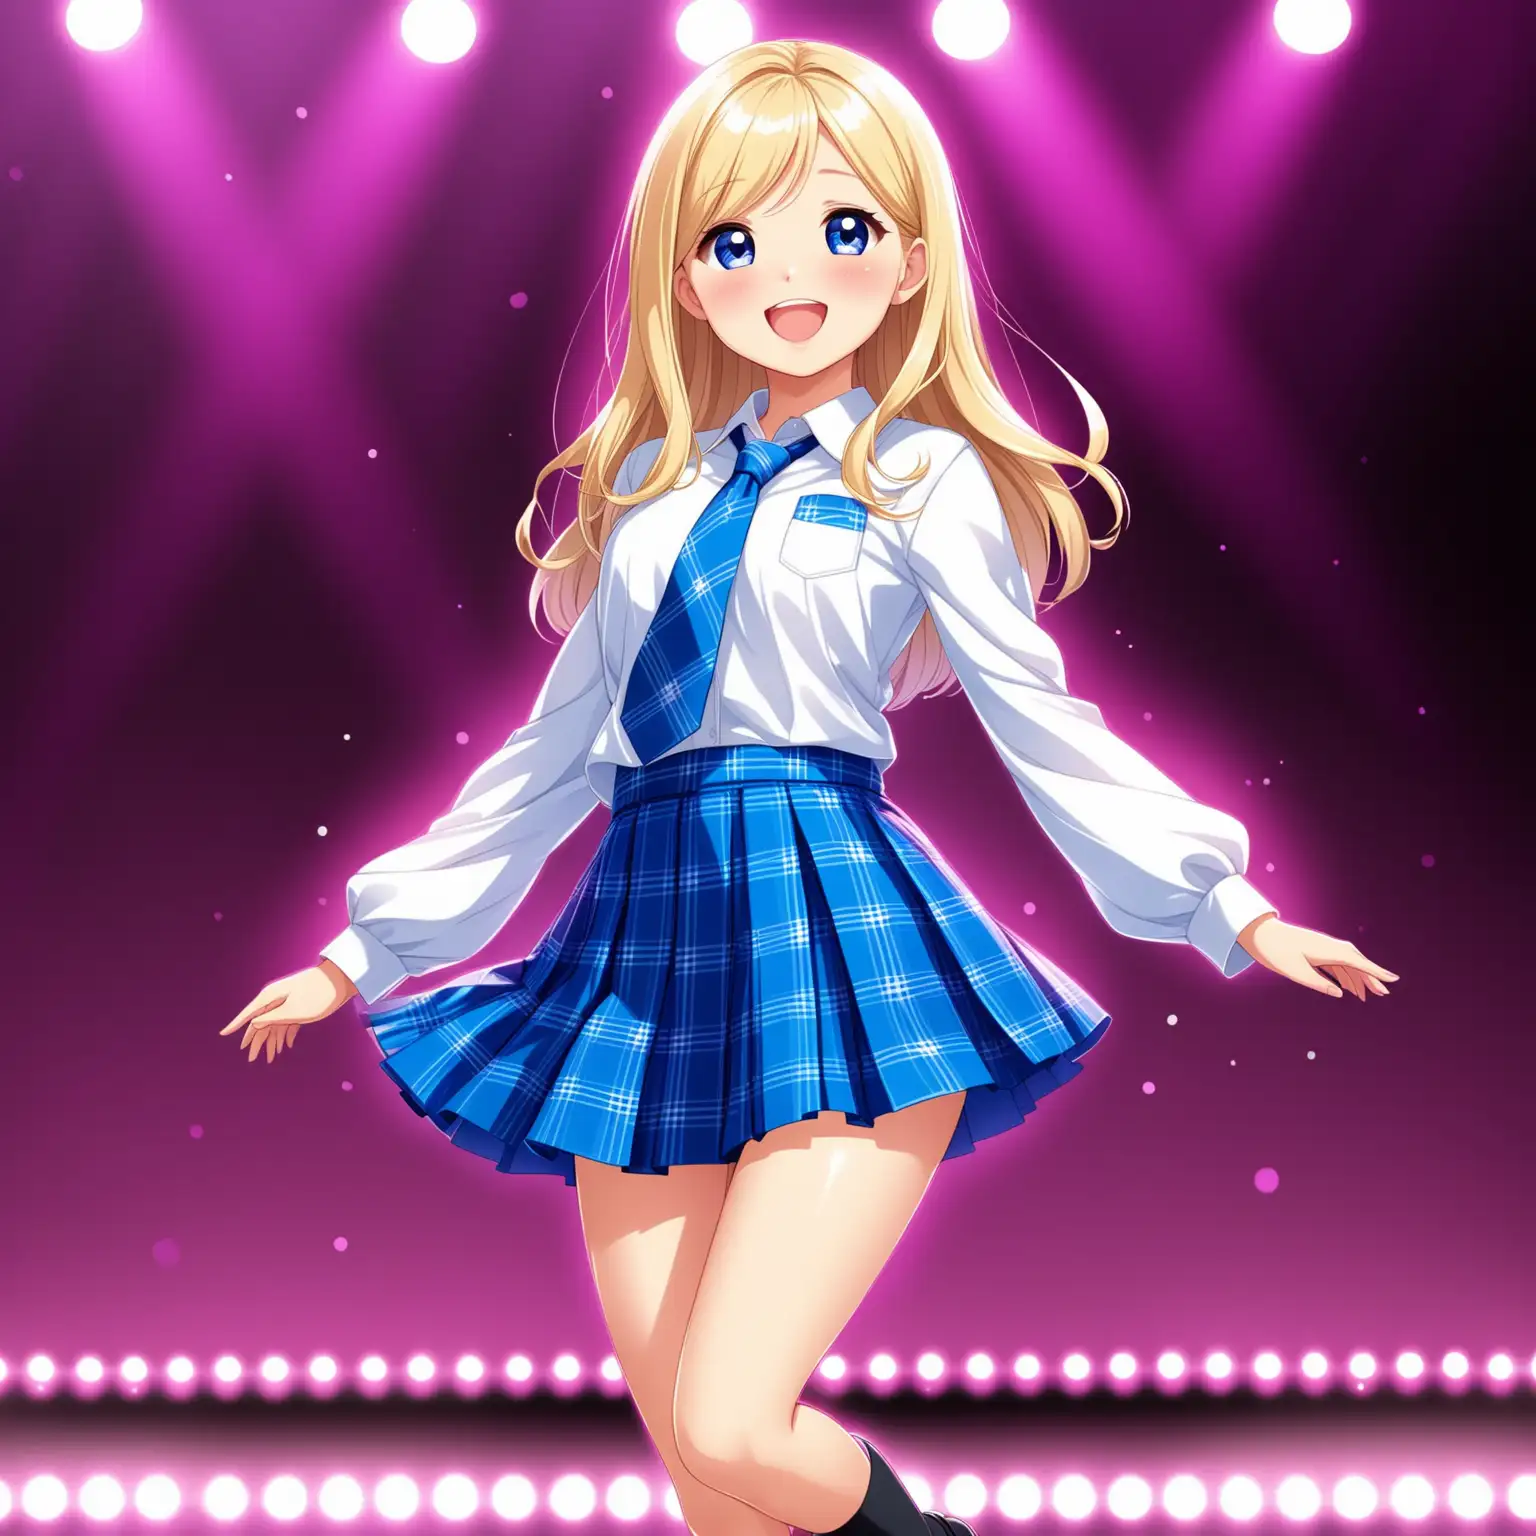 Vue dynamique de face, idole  japonaise sur scène Chelsea 12 ans 1,40 from Barbie blonde seins bonnet B, regarde tendre expression de bonheur, chemise blanche polyester manches longues et cravate bleu et micro jupe plissée bleu roy à carreaux bleu foncé et moccasins noir chante 